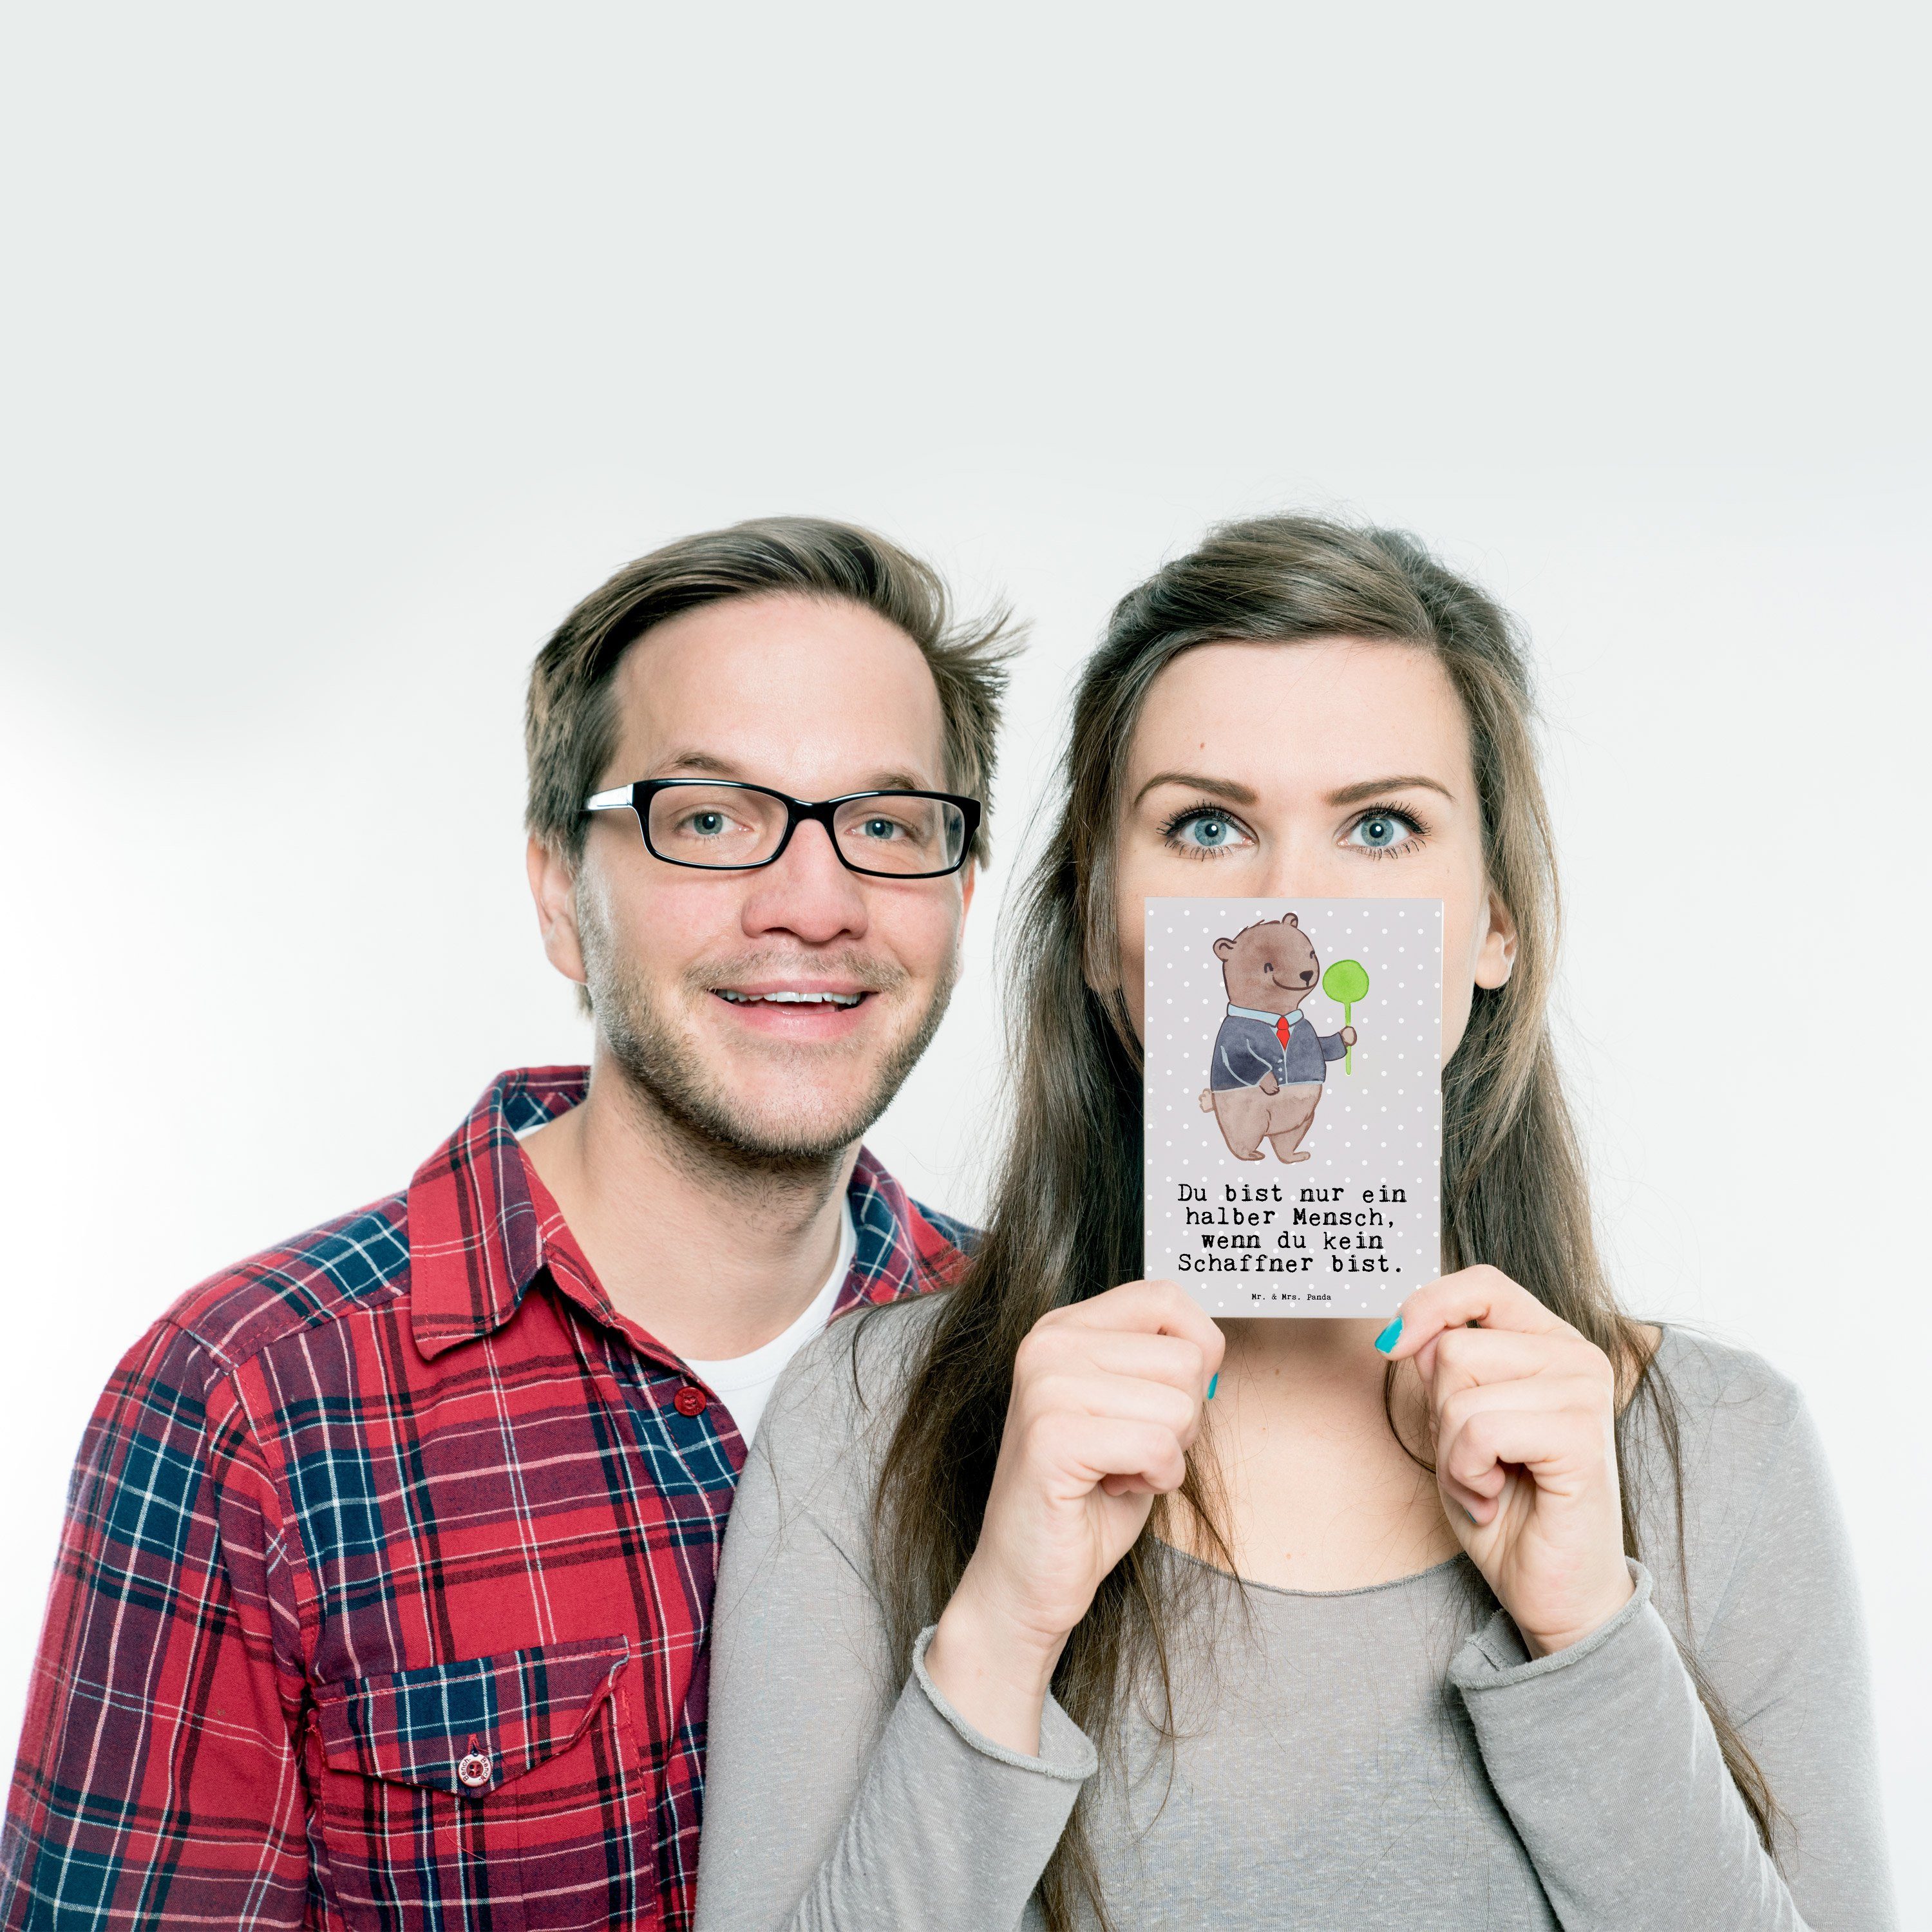 Mr. & Mrs. Panda Pastell Dankeskarte, Herz Geschenk, Schaffner - Ansichtska - Postkarte mit Grau